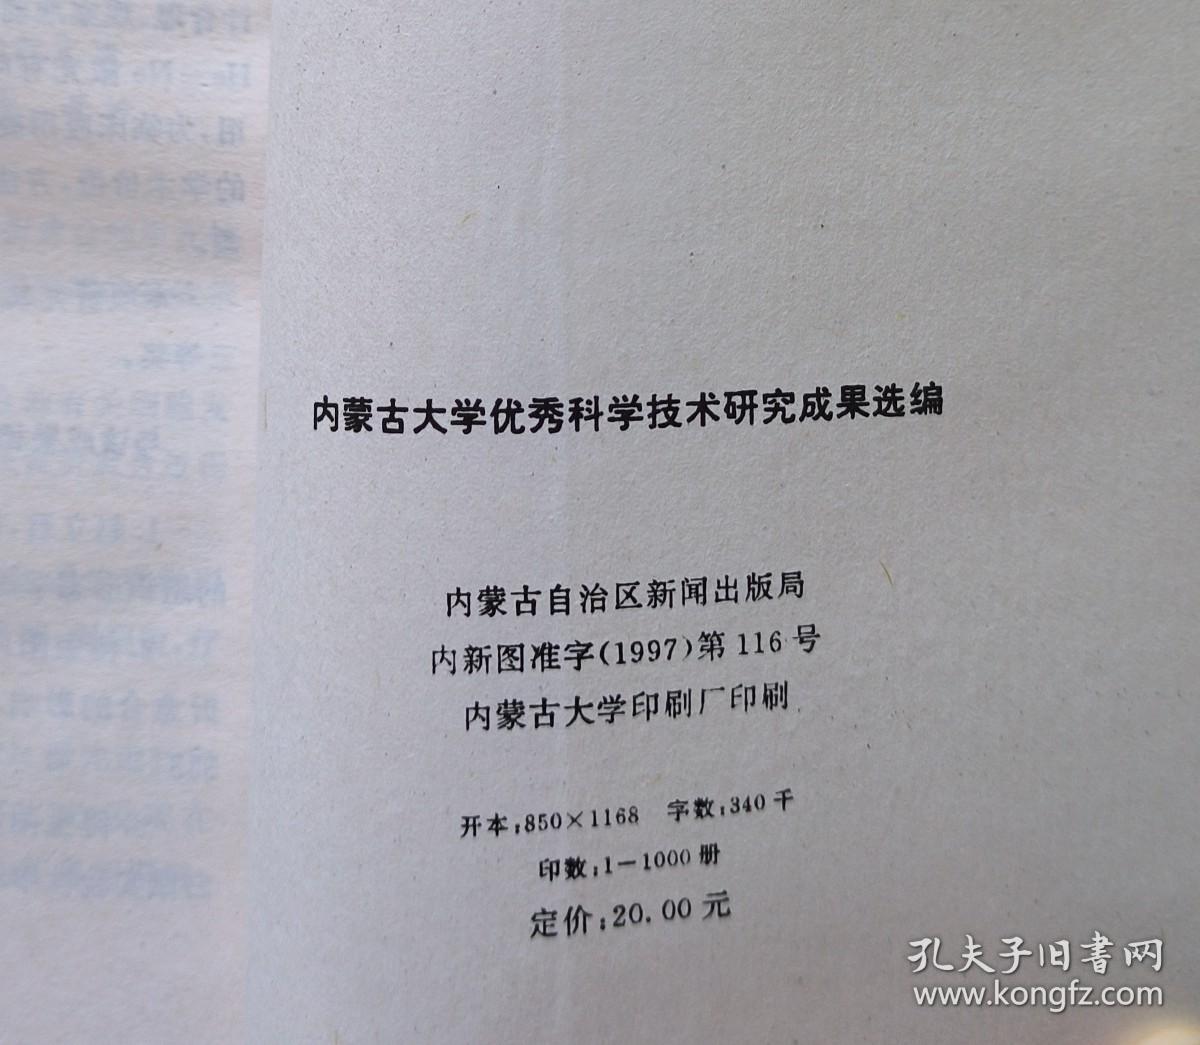 内蒙古大学优秀科学技术研究成果选编（1986-1997）